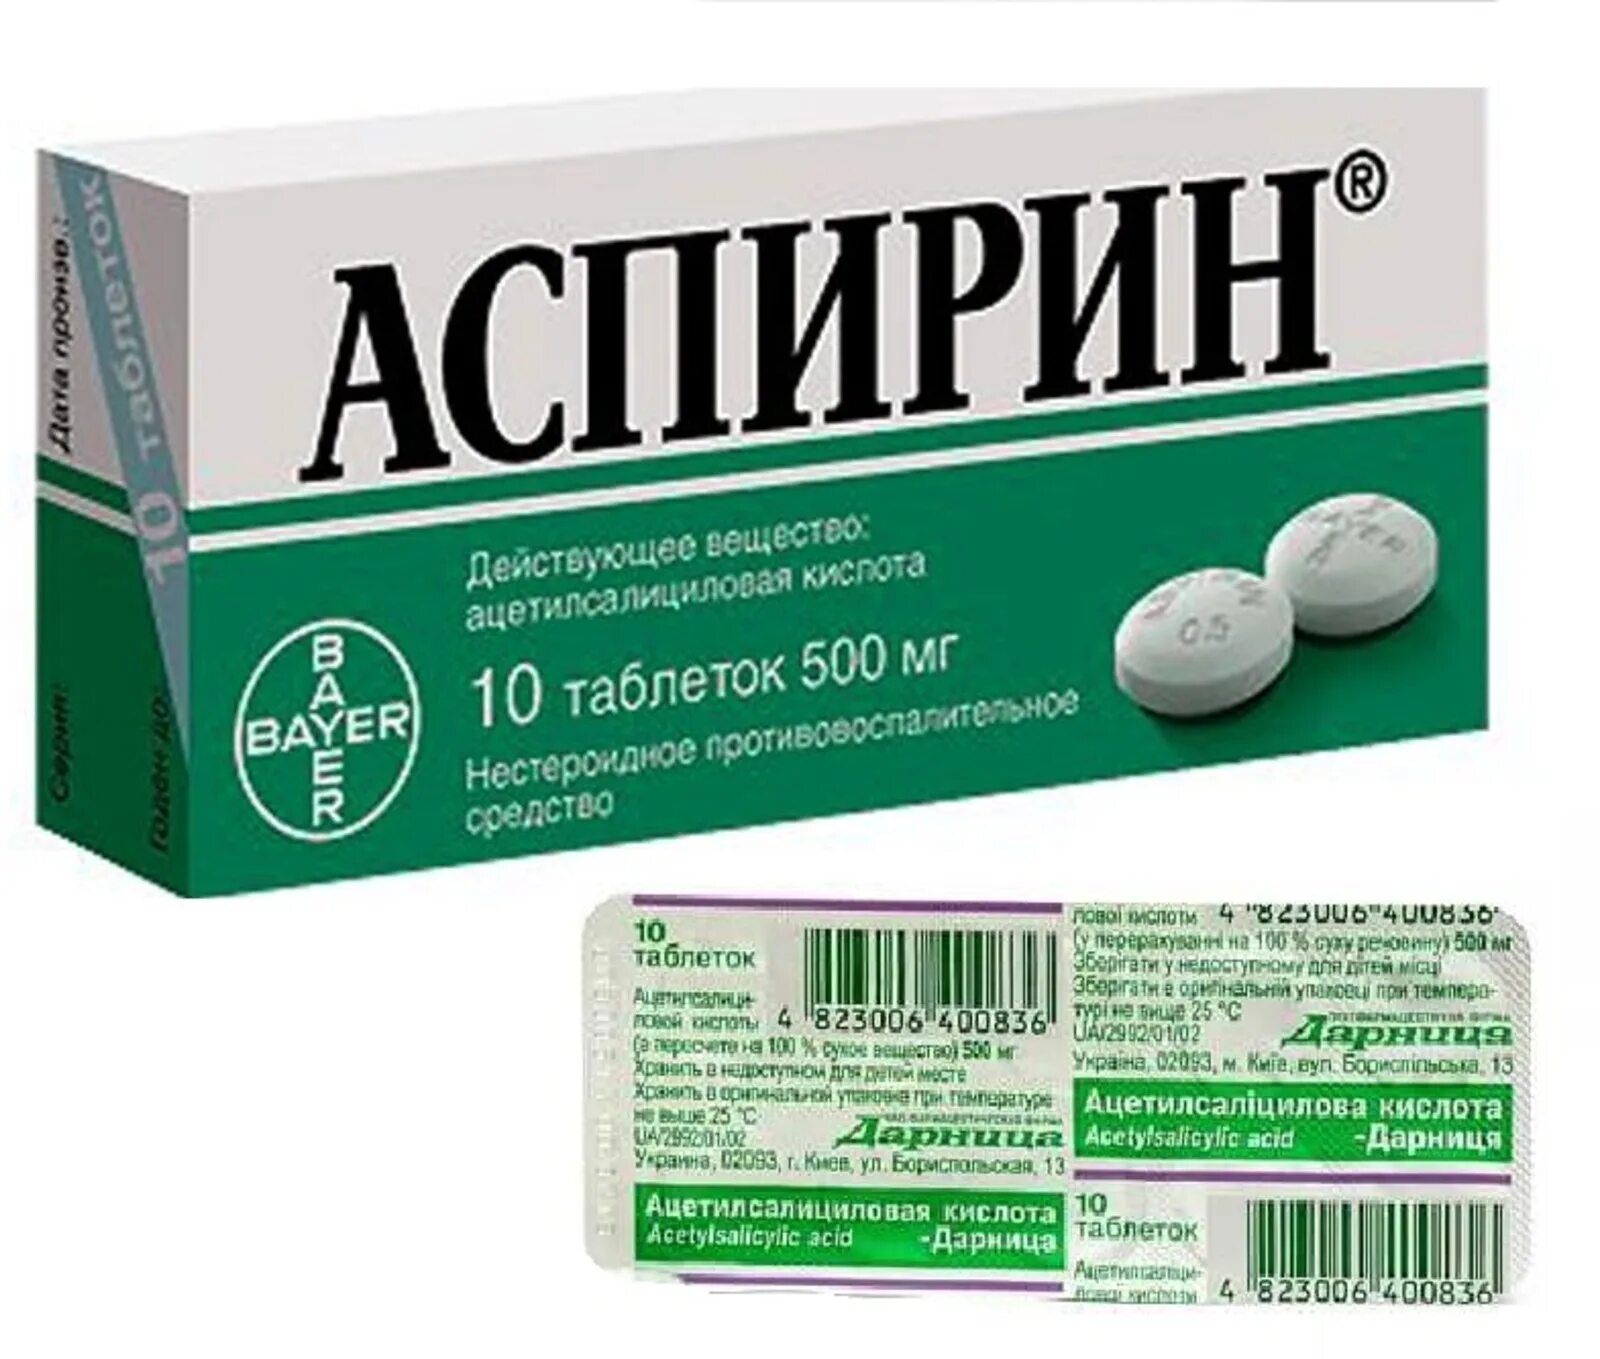 Аспирин 250 мг. Ацетилсалициловая кислота 250мг Bayer. Ацетилсалициловая кислота таб. 500мг №10. Ацетилсалициловая кислота 500 мг табл.